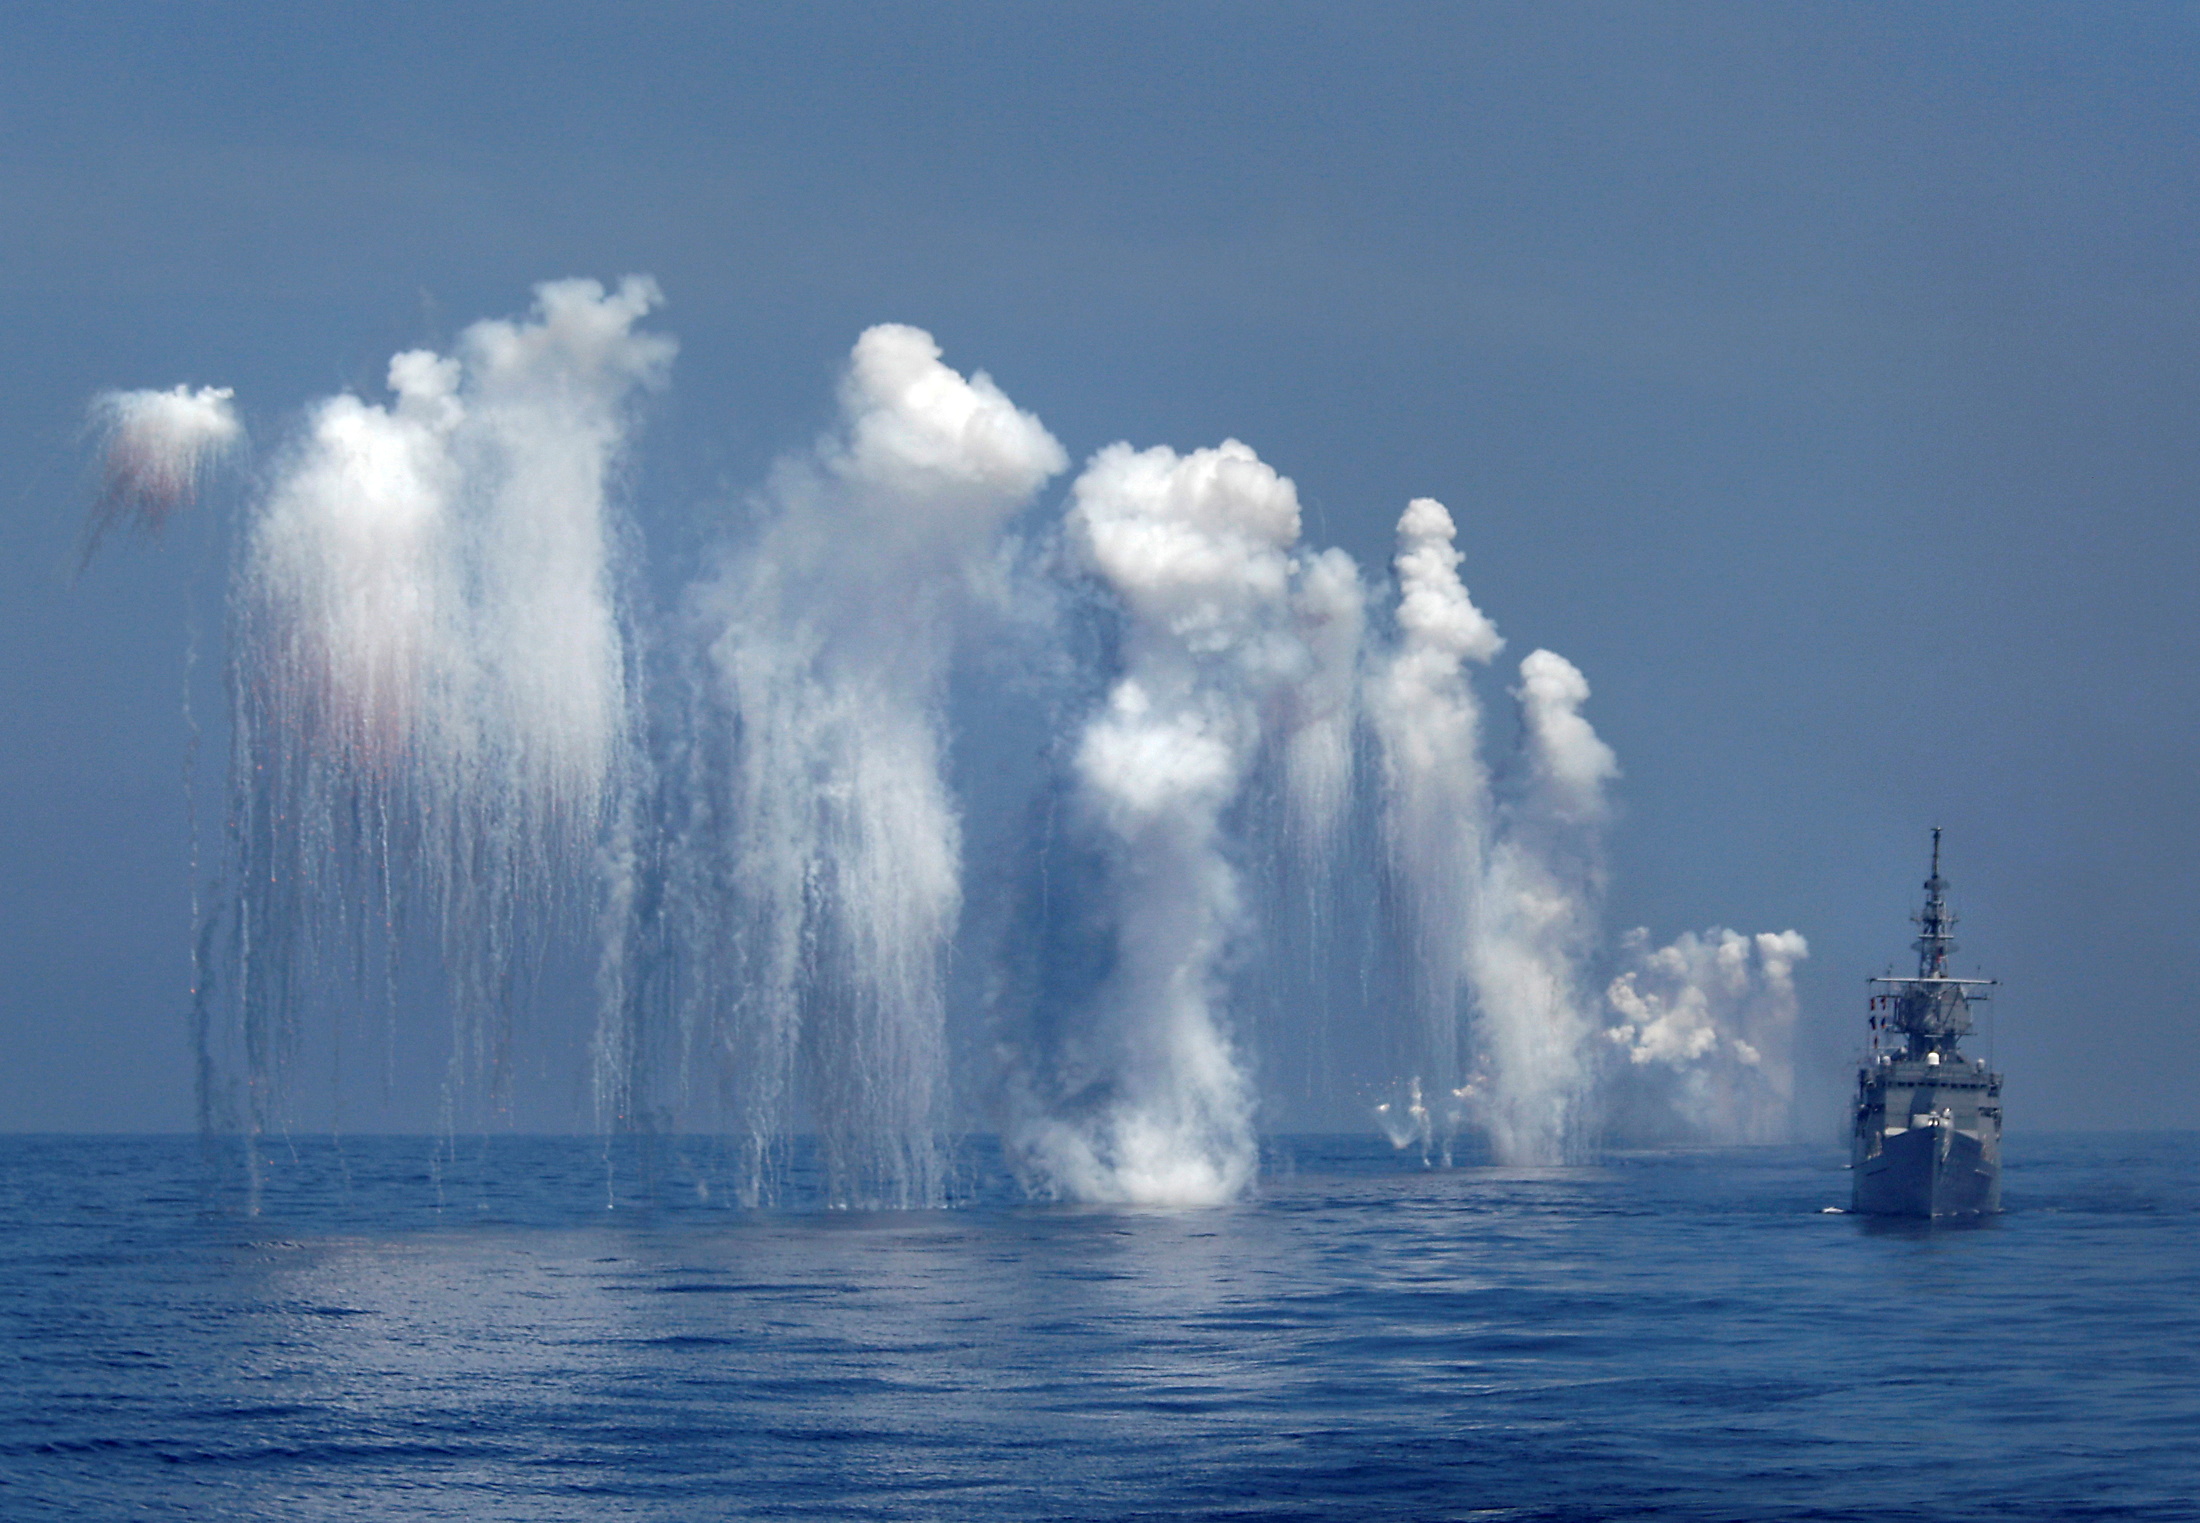 Foto de archivo: ejercicios militares en el Mar Merdional (Foto: Reuters)